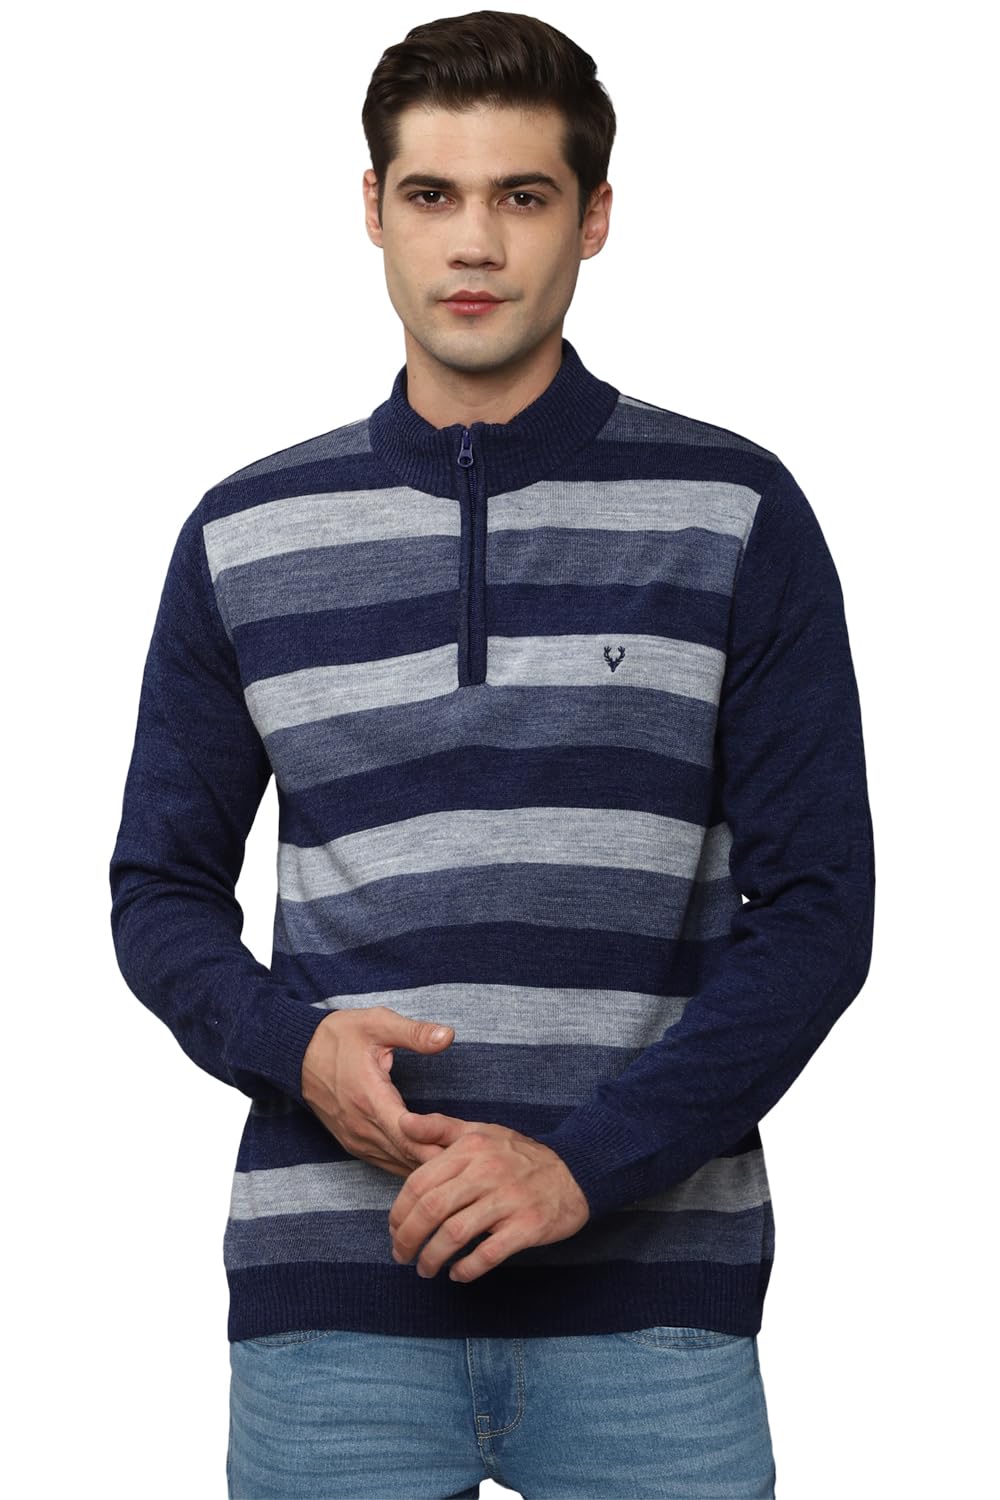 Allen Solly Men Acrylic Casual Pullover Sweater (ASSWSYRGFC44821_Navy